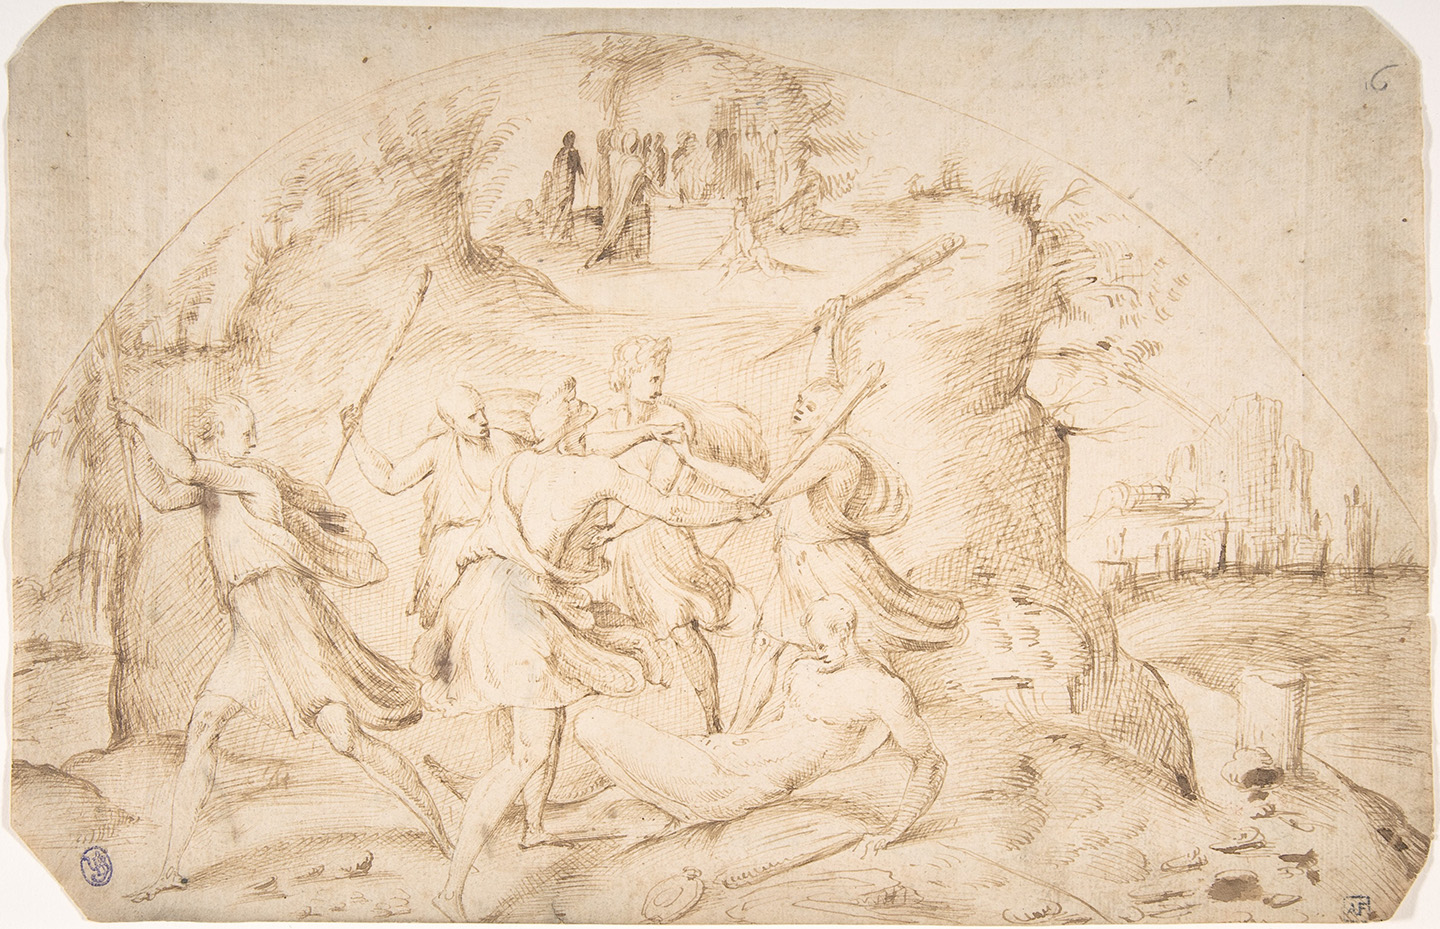 Tác phẩm “The Age of Iron” (Thời đại đồ sắt), được cho là của nghệ sĩ Alonso Berruguete, vẽ vào khoảng những năm 1520 – 1530. Bút và mực nâu; kích thước: 8 inch x 12 ⅜ inch (~20cm x 31cm). Bảo tàng Nghệ thuật Metropolitan, thành phố New York. (Ảnh: Tư liệu công cộng)